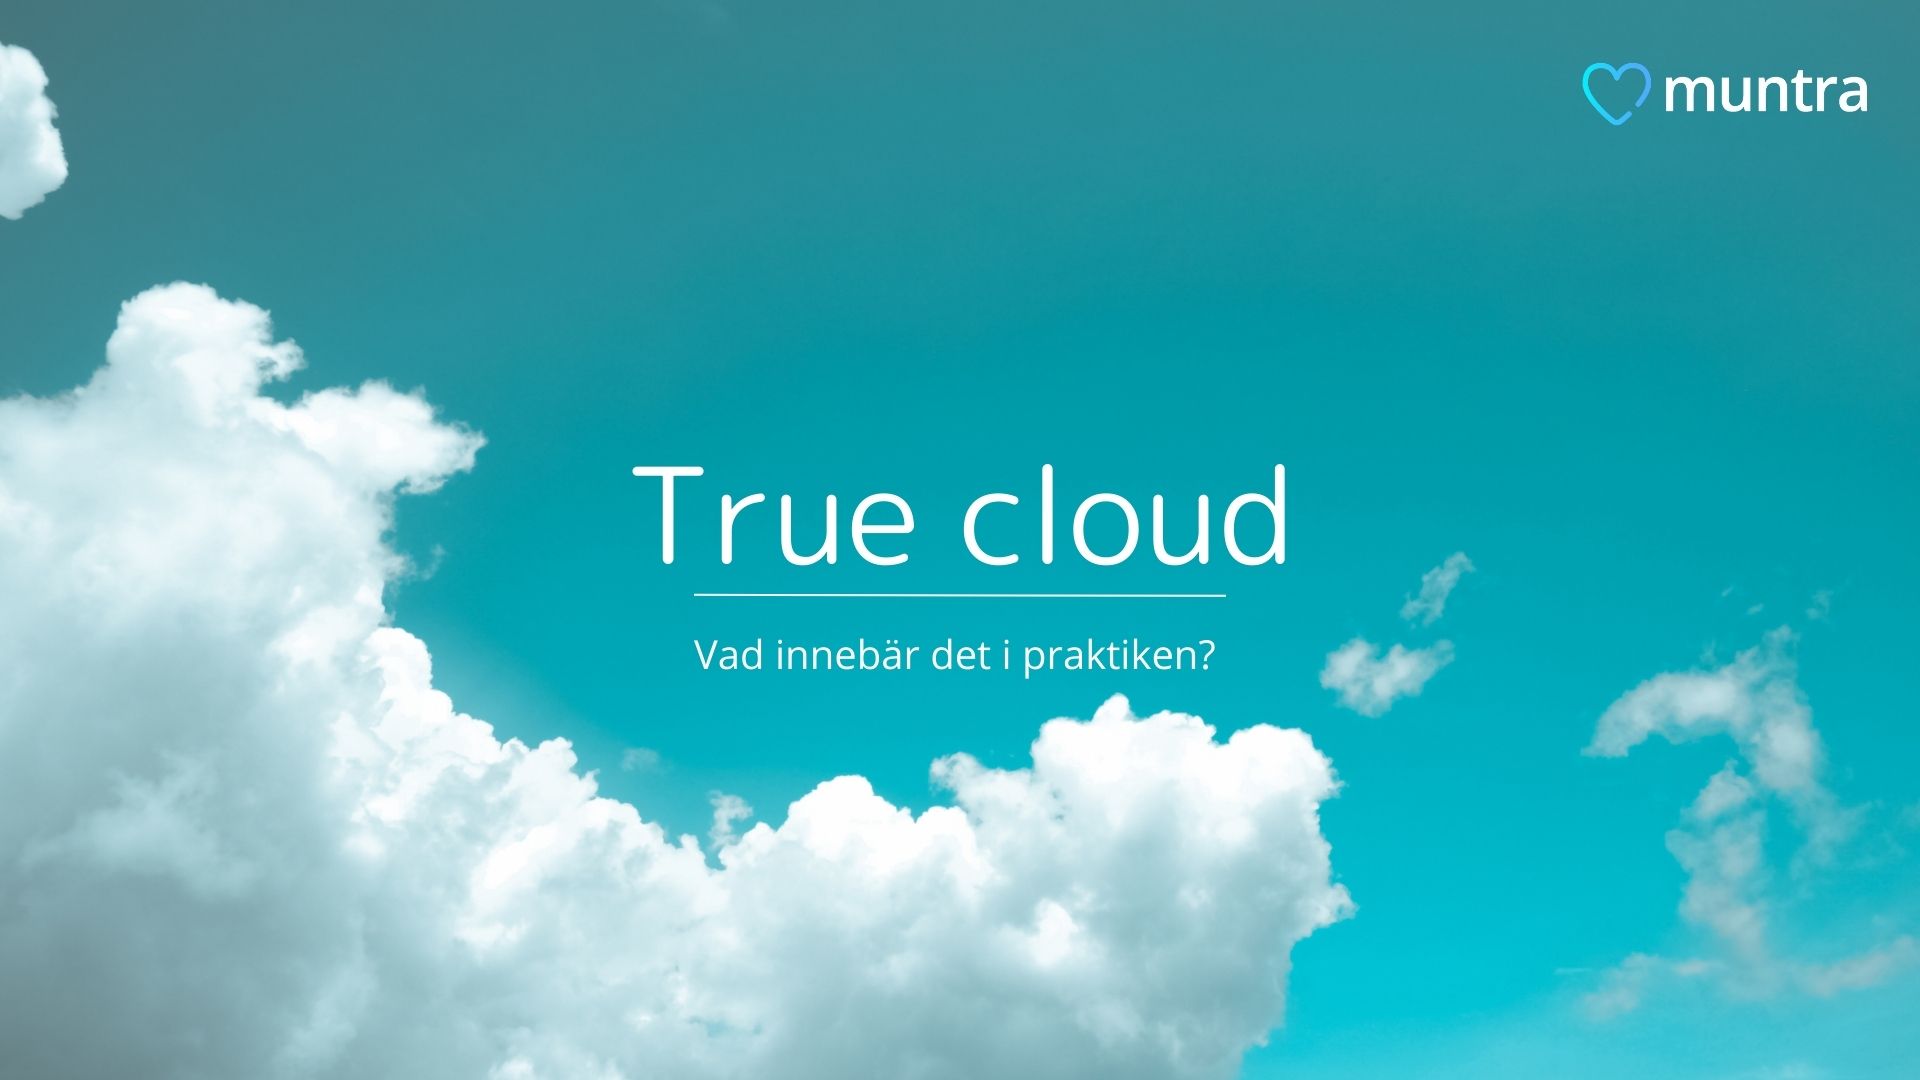 Vad innebär true cloud i praktiken? 